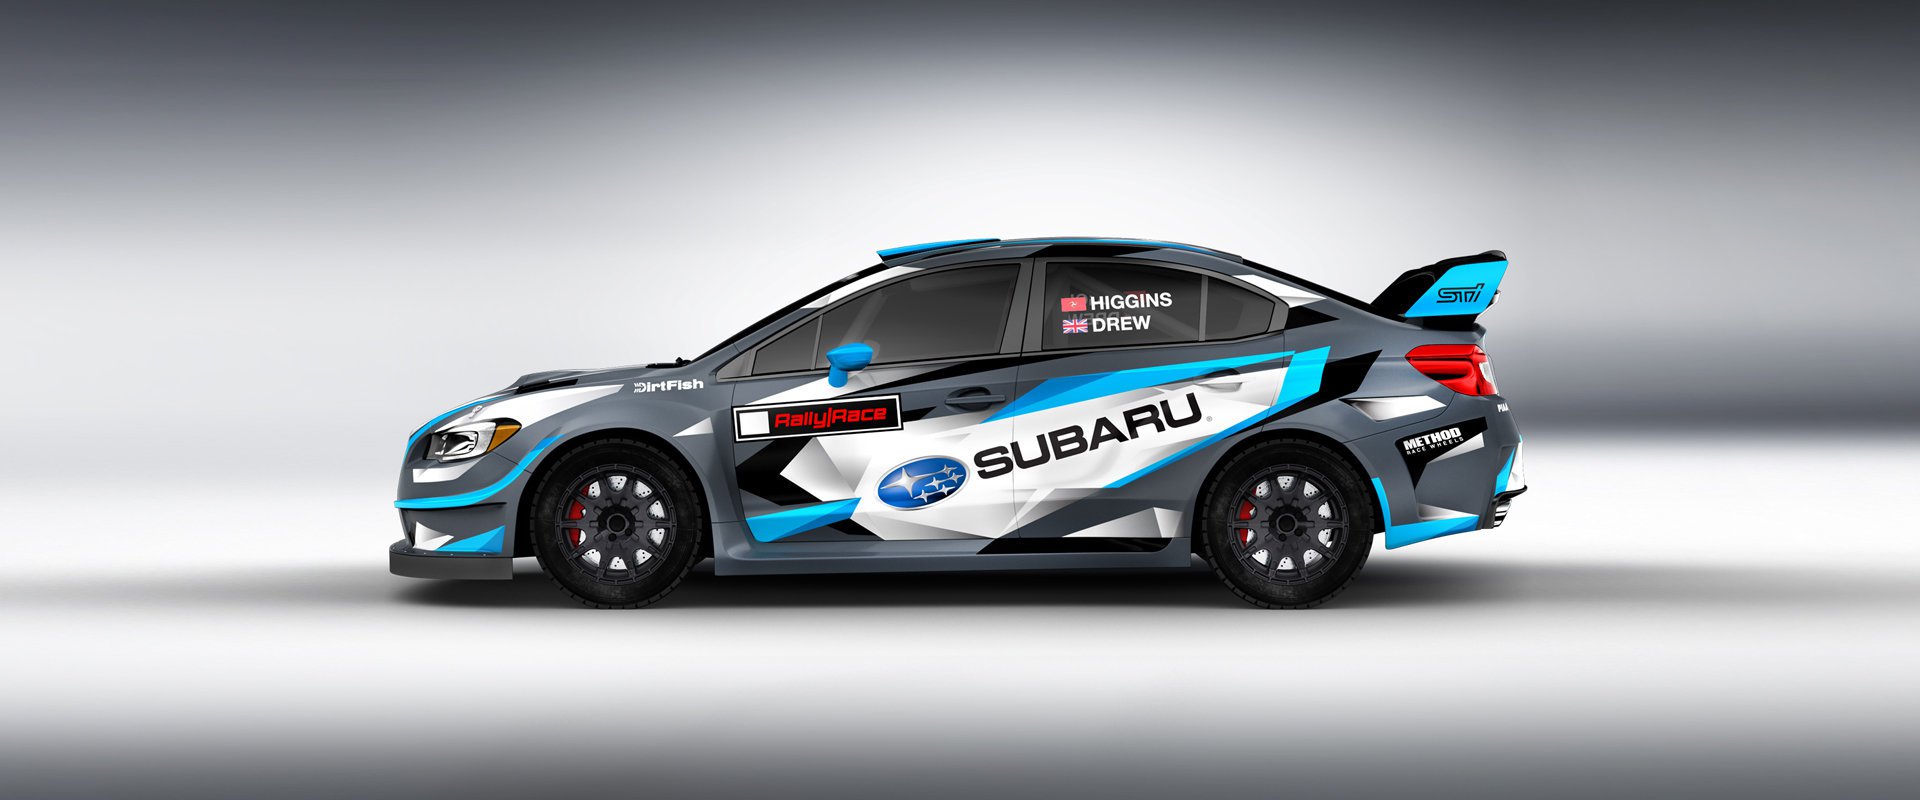 Subaru Rally Team USA #3